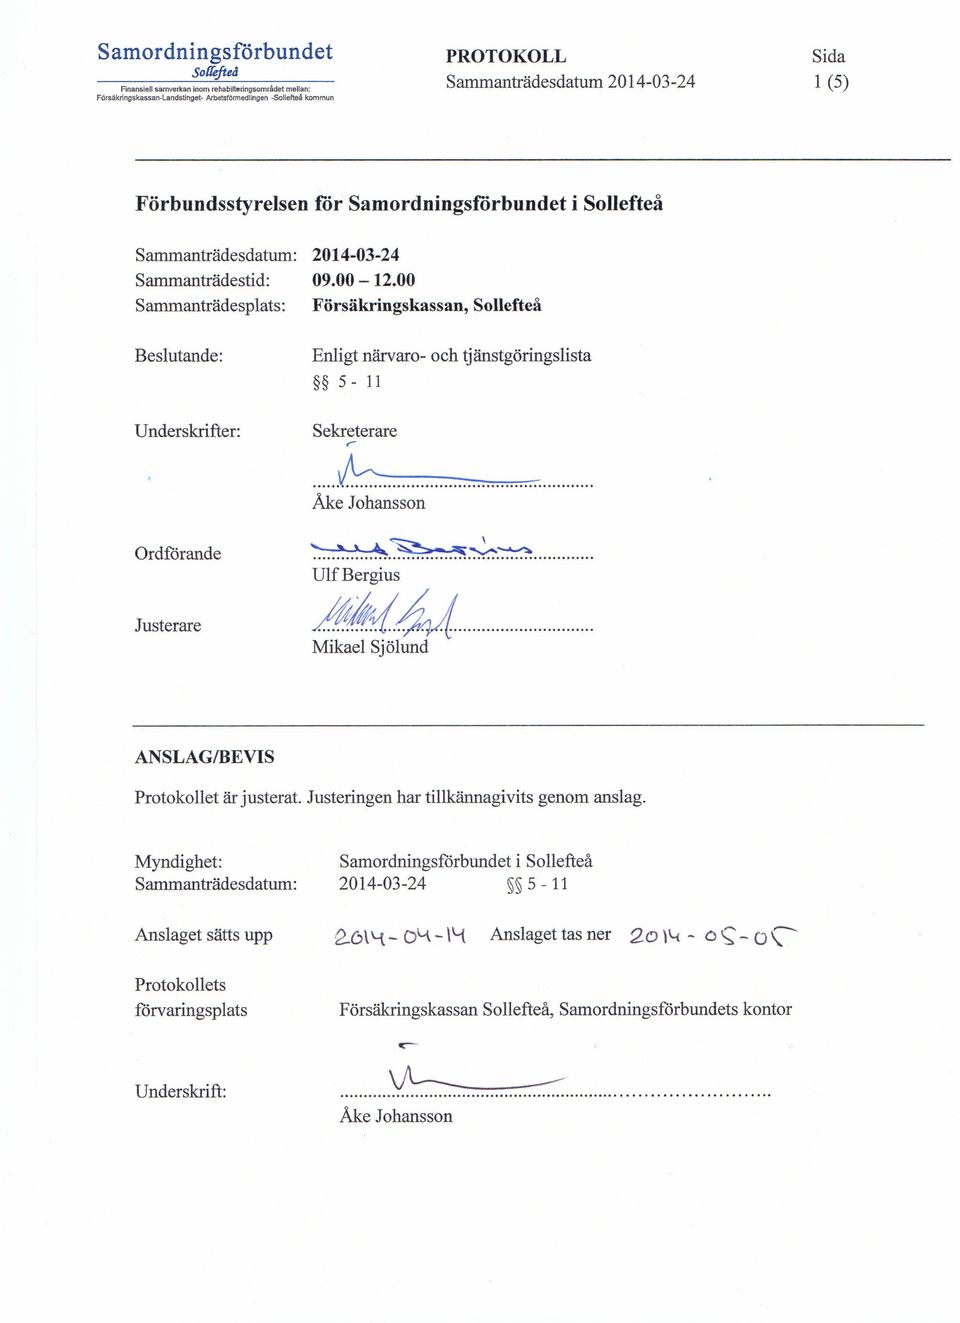 00 Försäkringskassan, Sollefteå Beslutande: Underskrifter: Ordförande Justerare Enligt närvaro- och tjänstgöringslista 5-11 Sekreterare r... b.. Åke Johansson >..:':....'S. Ulf Bergius A.4YldJ.